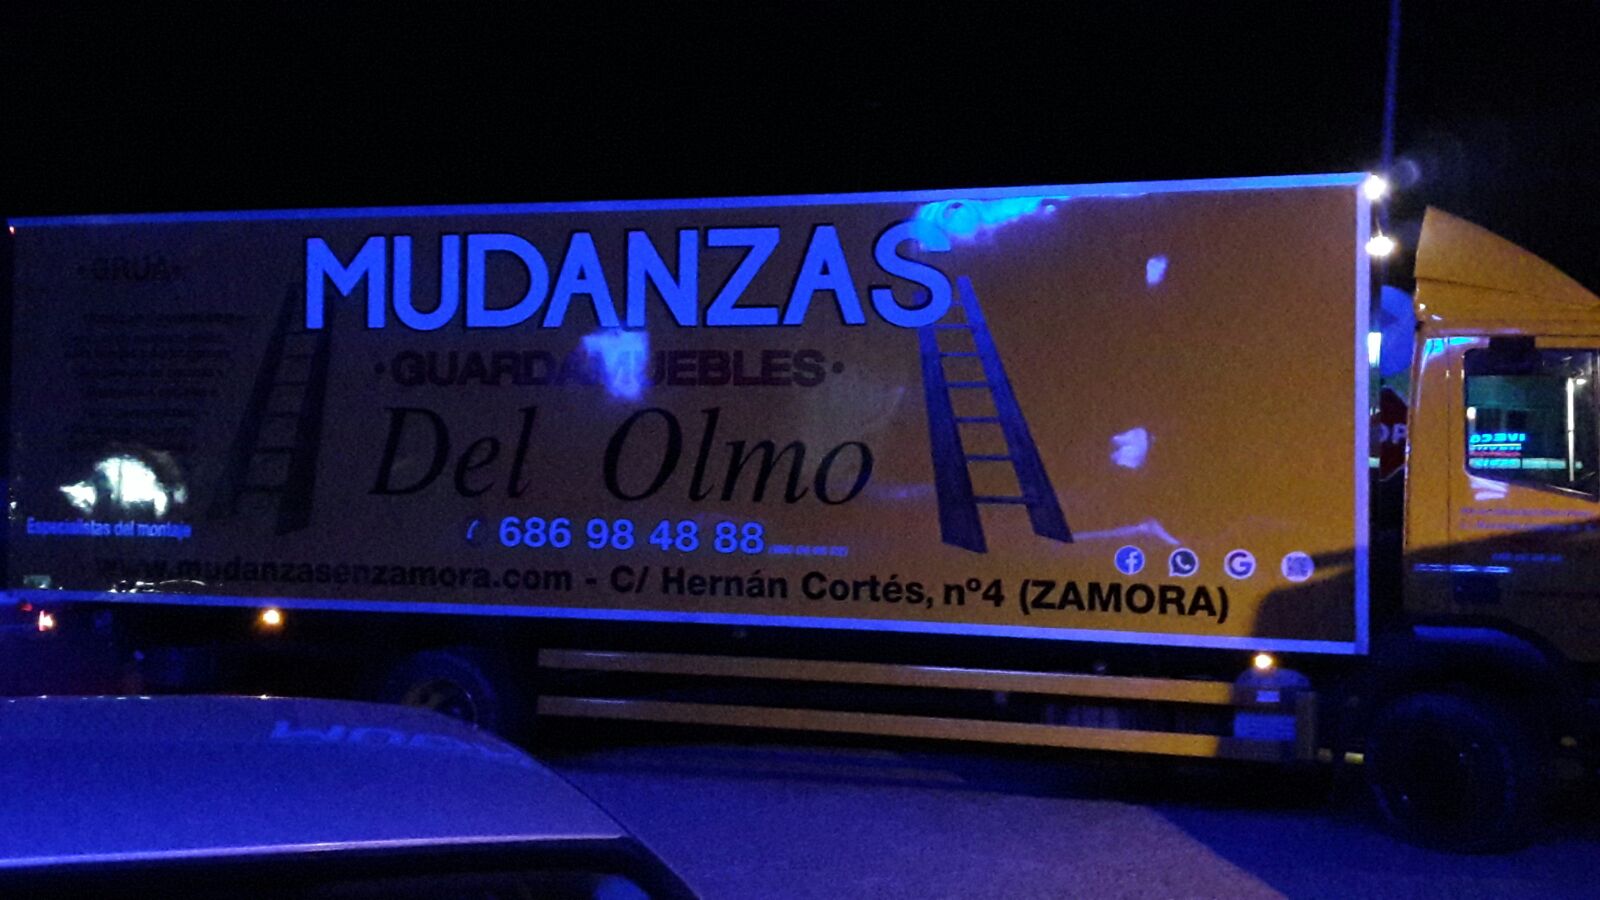 Images Mudanzas Del Olmo. Mudanzas en Zamora.